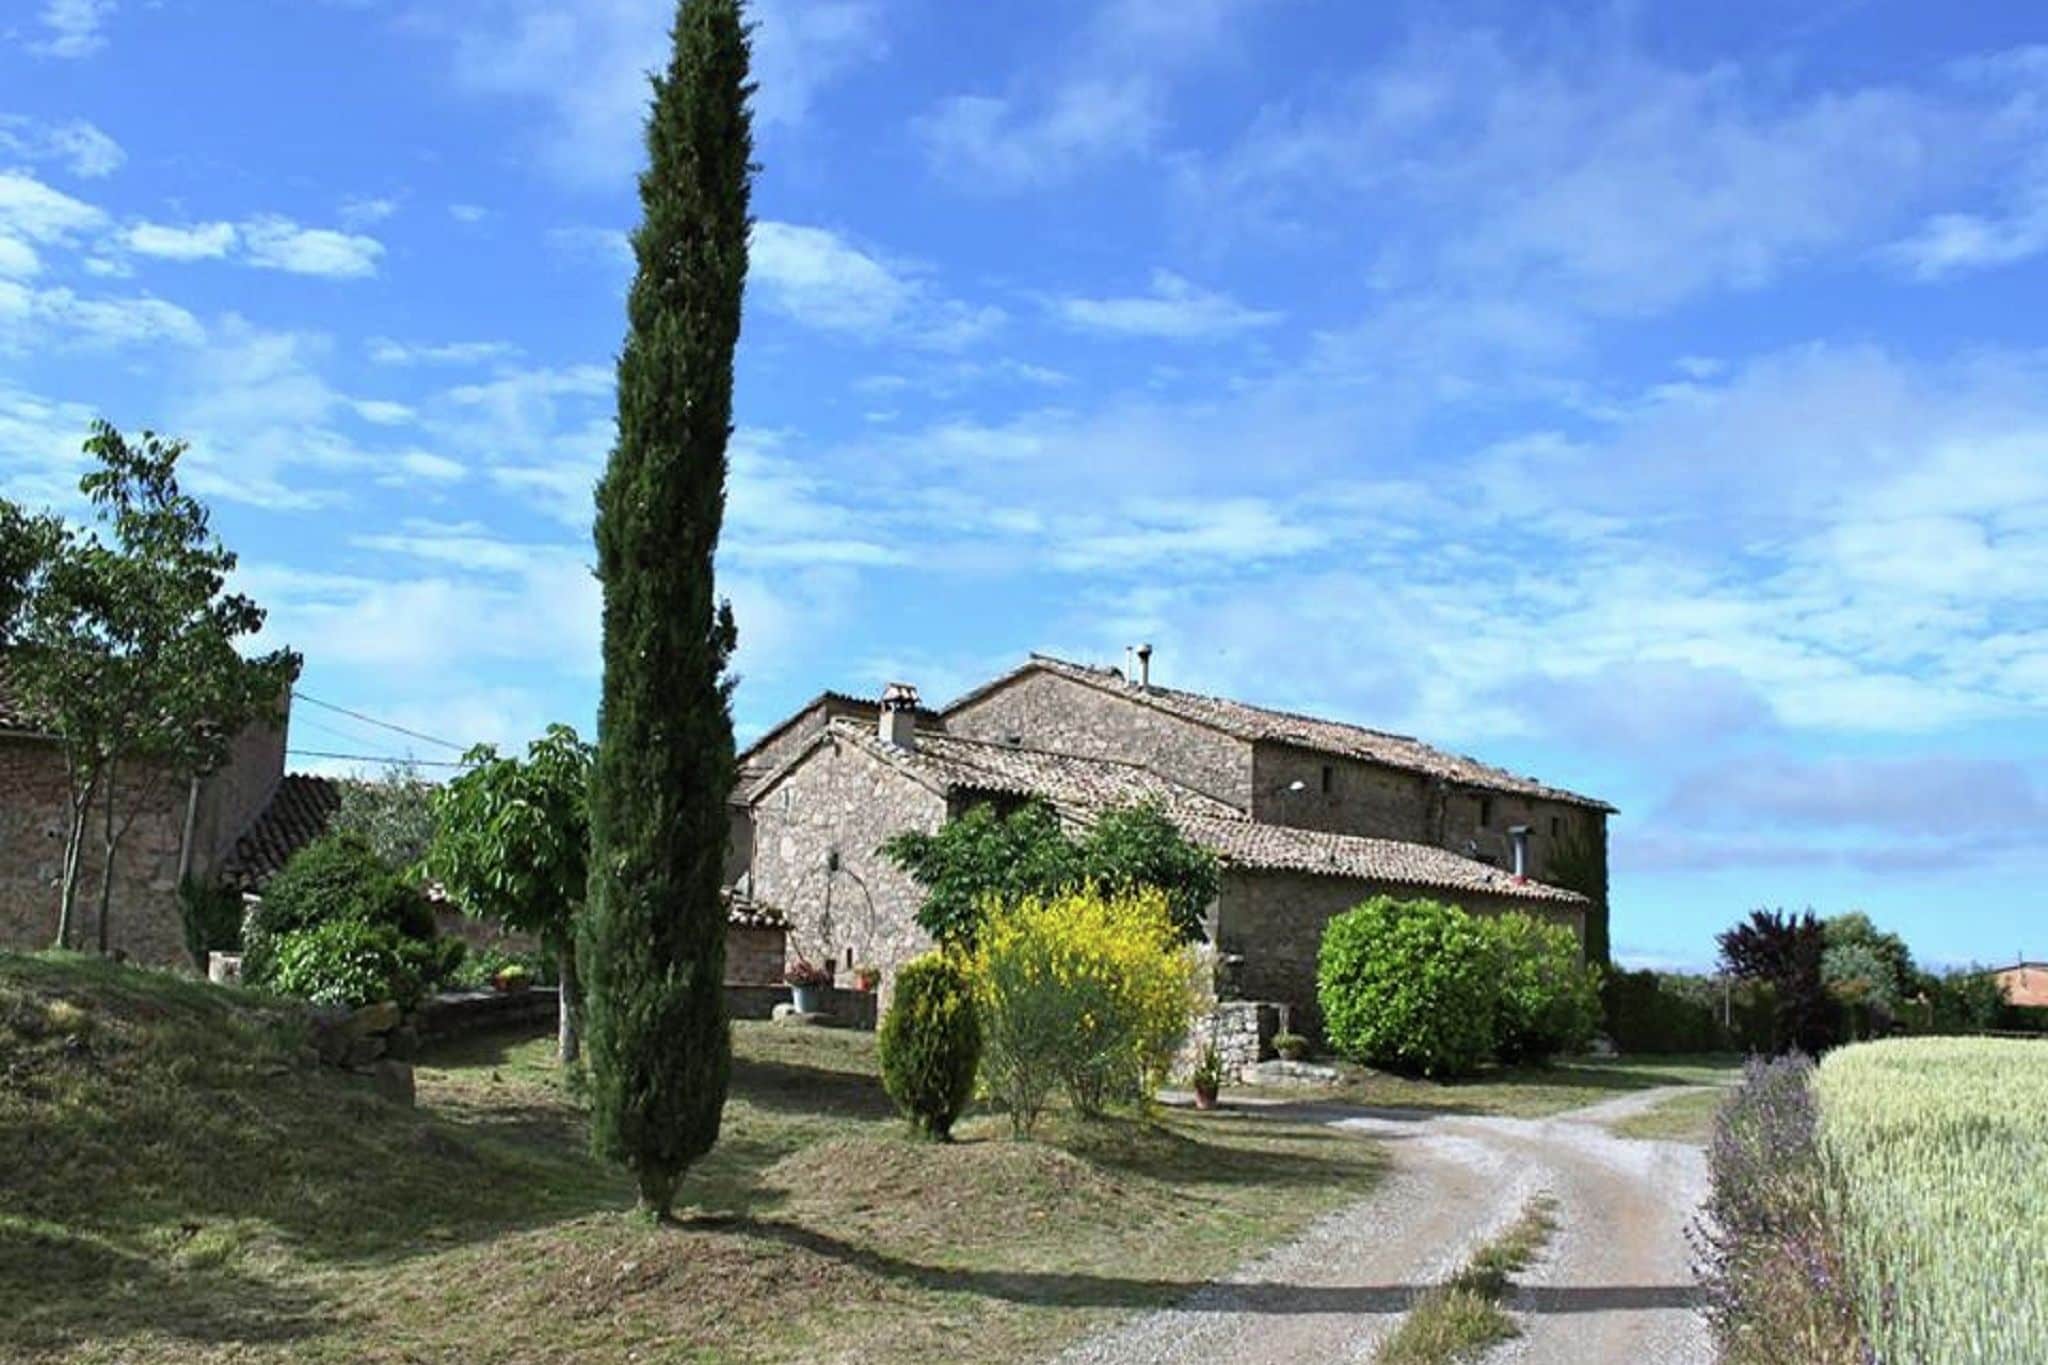 Catalaans landhuis in een klein dorpje dichtbij Montmajor